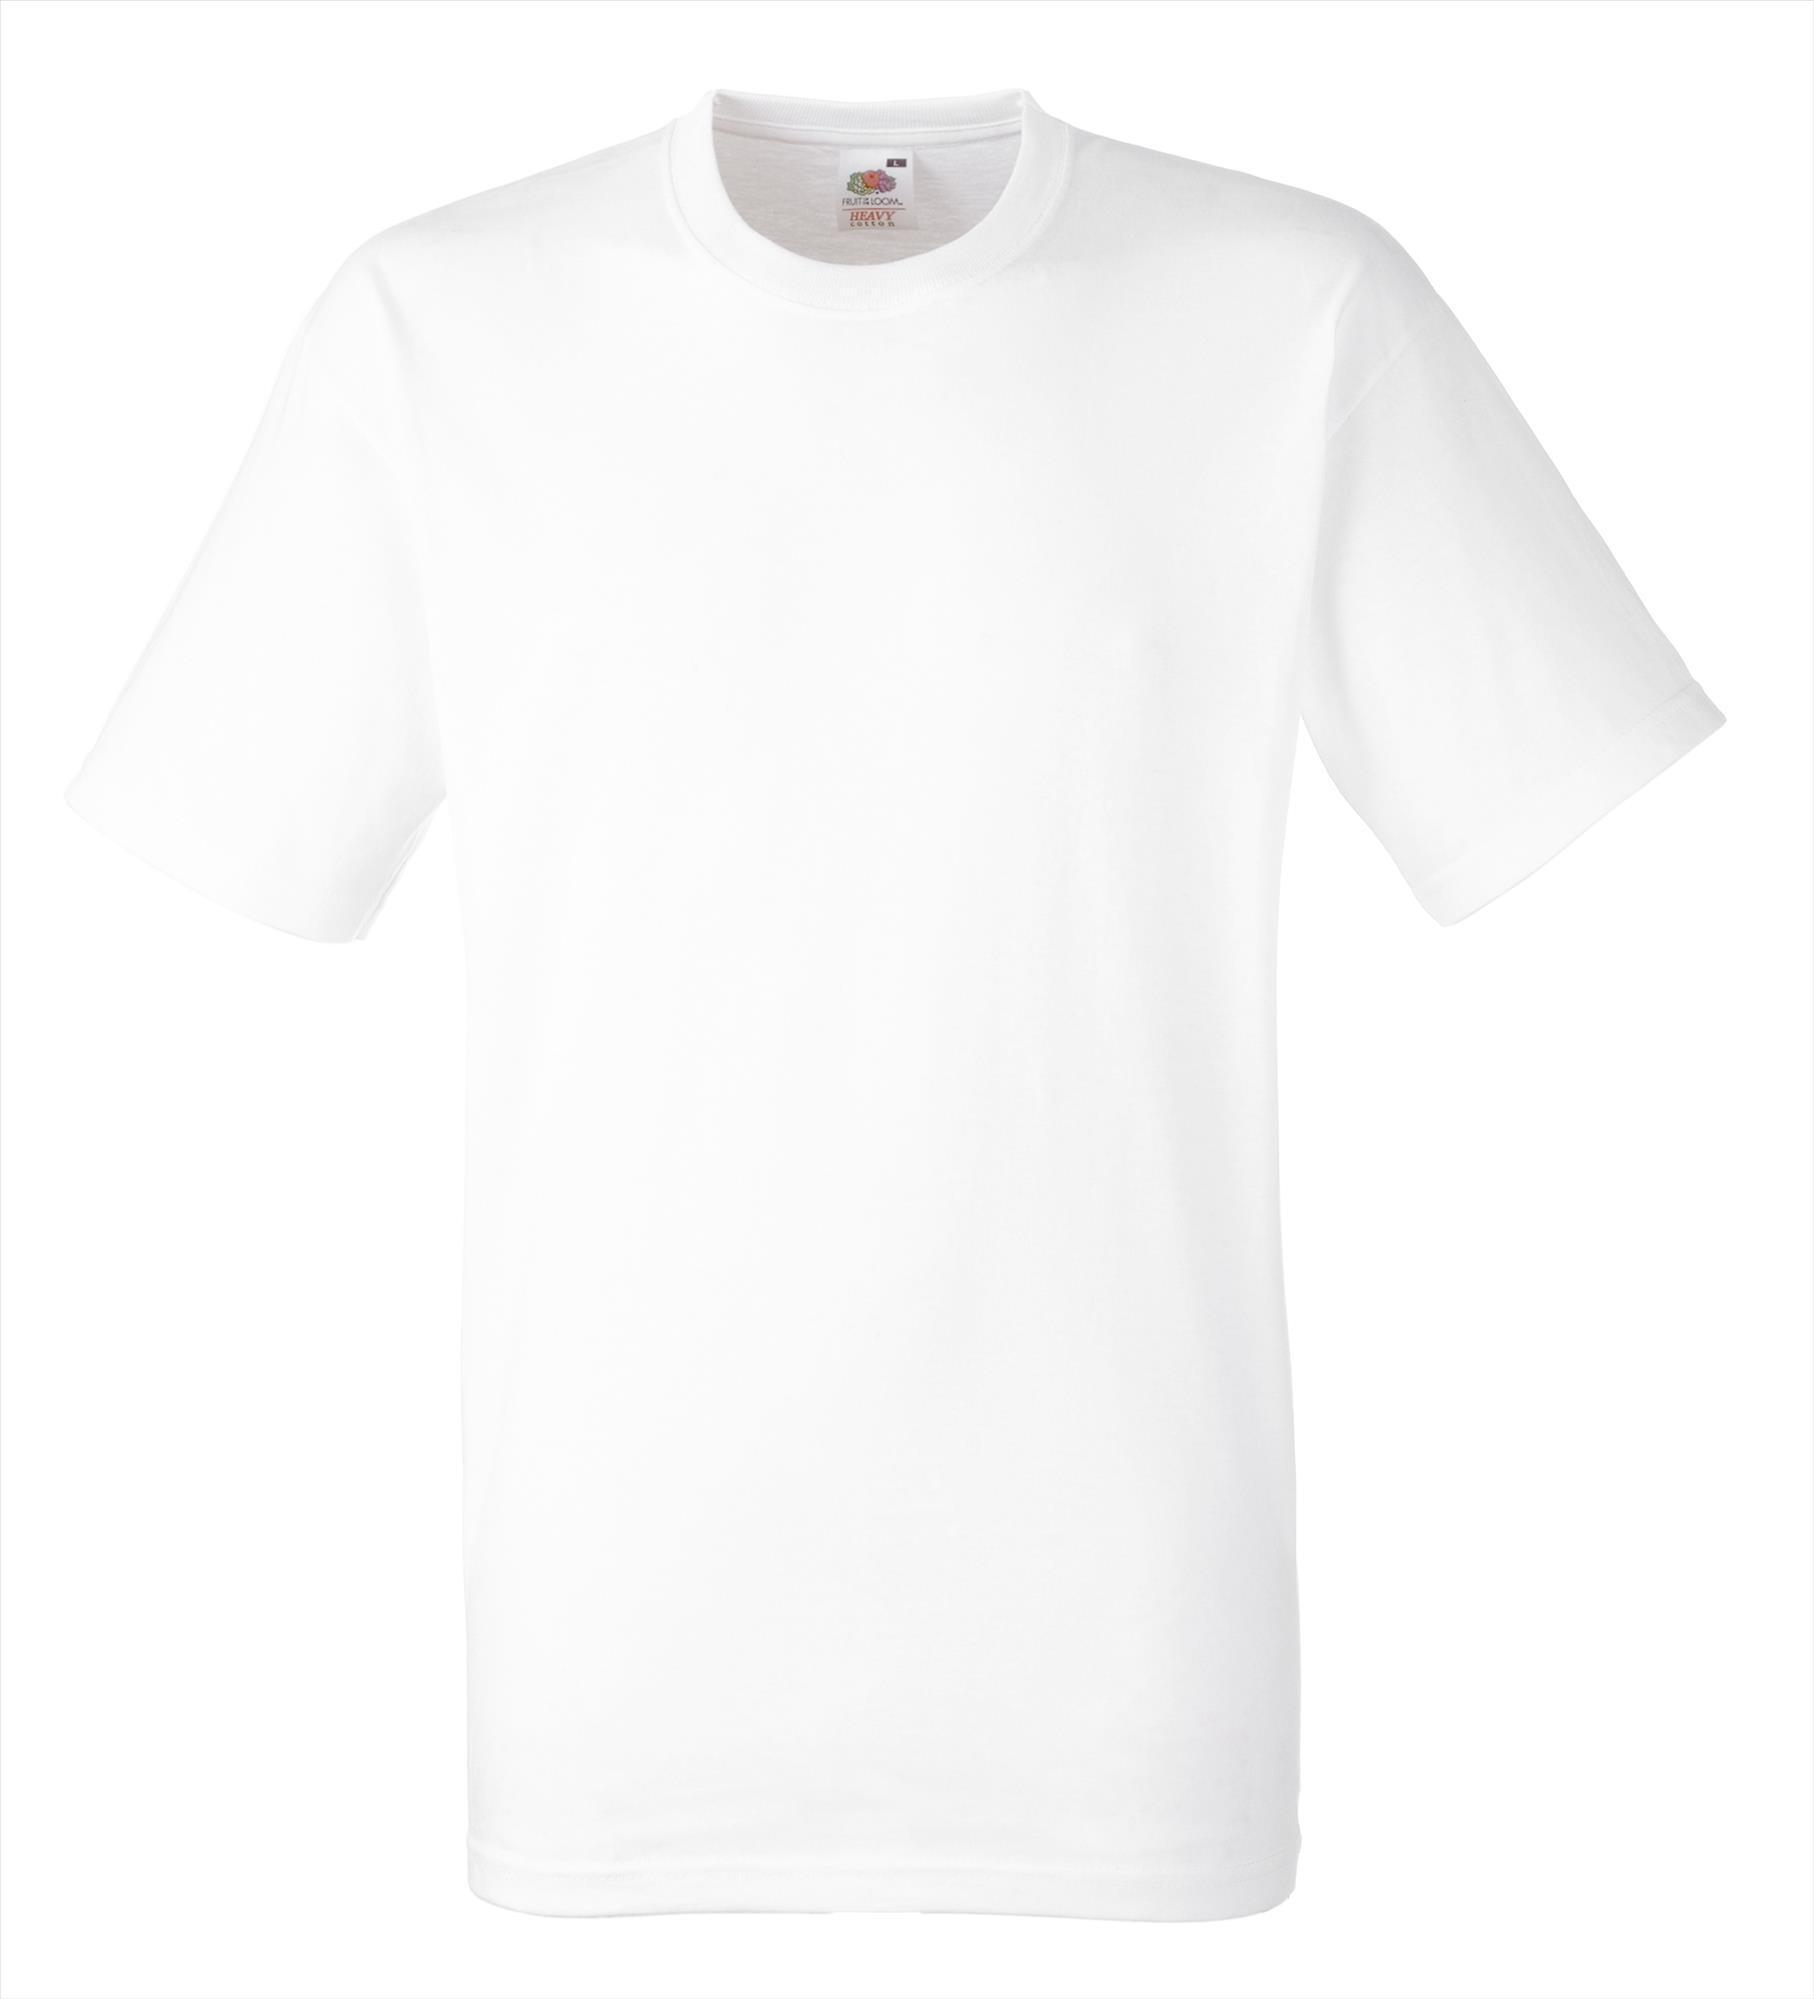 T-shirt unisex wit lekker dik personaliseren je eigen opdruk prima werk T-shirt